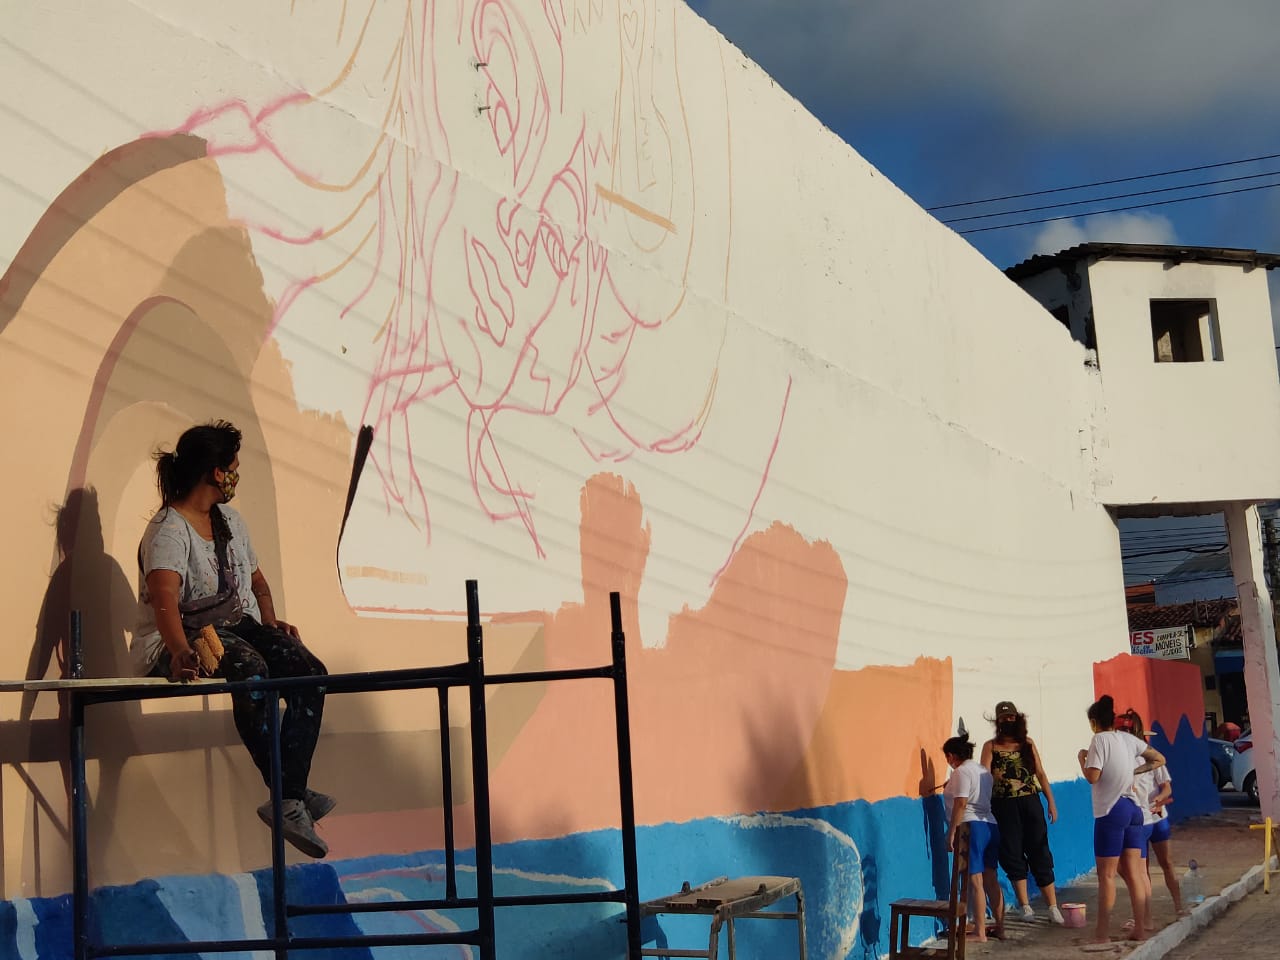 Grito abafado: mulheres usam grafite para expressar vida em muro de presídio em Natal